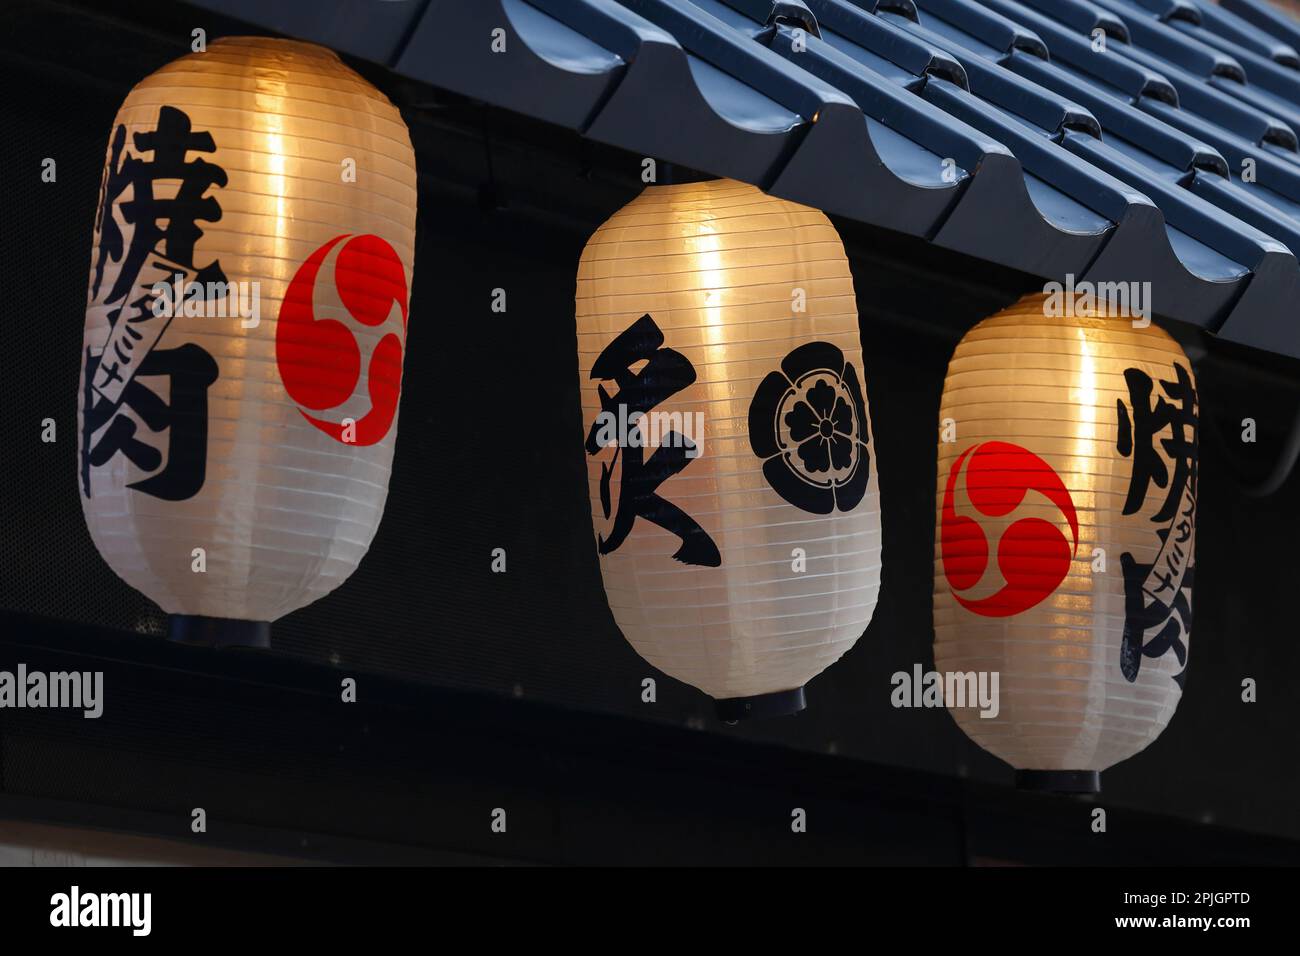 Lanterne di carta giapponese, chochin 提灯 appesi fuori un ristorante. Sulle lanterne sono scritte le parole 焼肉 yakiniku o "carne alla griglia". Foto Stock